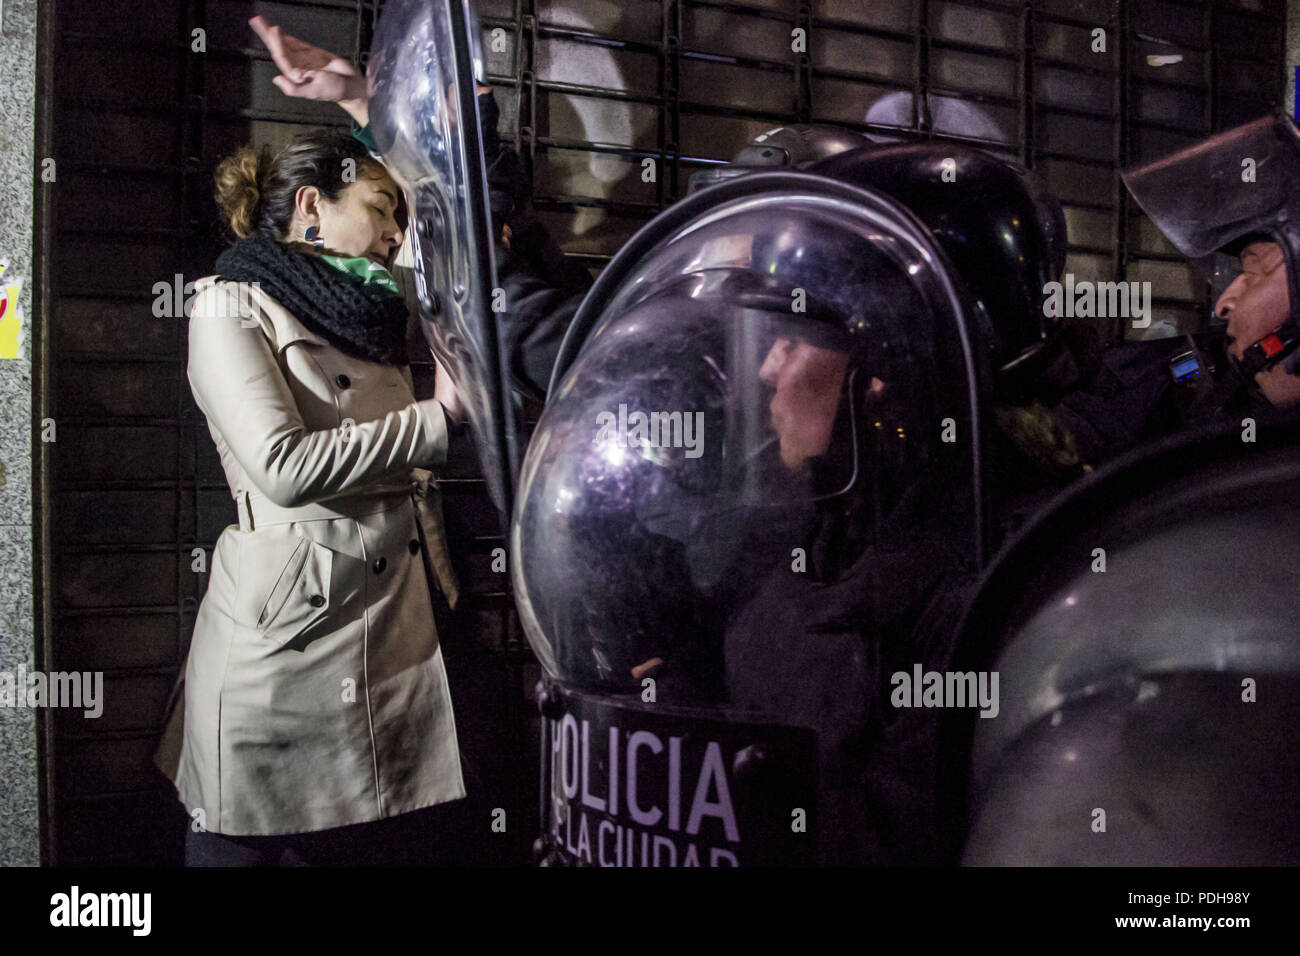 Agosto 9, 2018 - Buenos Aires, Capital Federal, Argentina - El Senado argentino ha rechazado un proyecto de ley que habría legalizado el aborto en las primeras 14 semanas de embarazo. Los manifestantes en ambos lados del debate se reunieron frente al parlamento como votación tuvo lugar. La Vigilia por la Ley del Aborto culminó en una fuerte operación de seguridad por parte de la policía de la ciudad de Buenos Aires, después de conocer la decisión del Senado en contra de la aprobación de la ley. (Crédito de la Imagen: © Roberto Almeida Aveledo via ZUMA Wire) Foto de stock